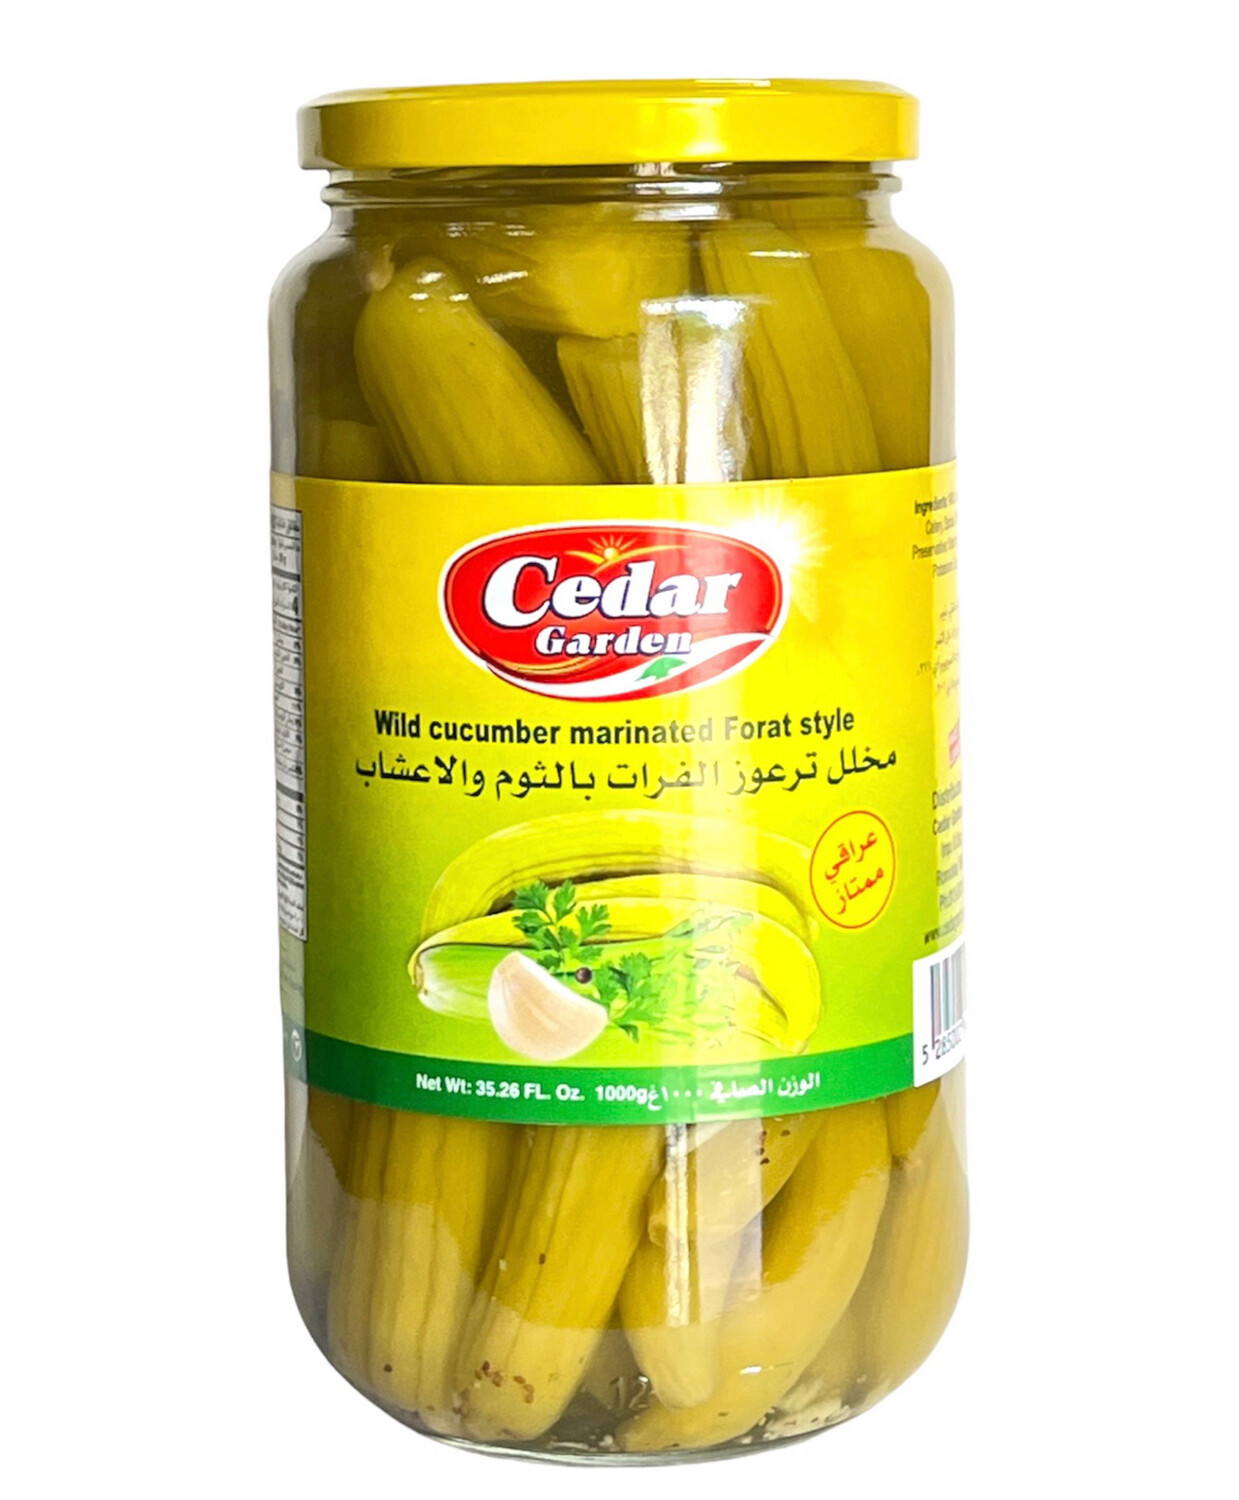 Cedar Garden Wild Cucumber Marinated Forat Style 12x1kg